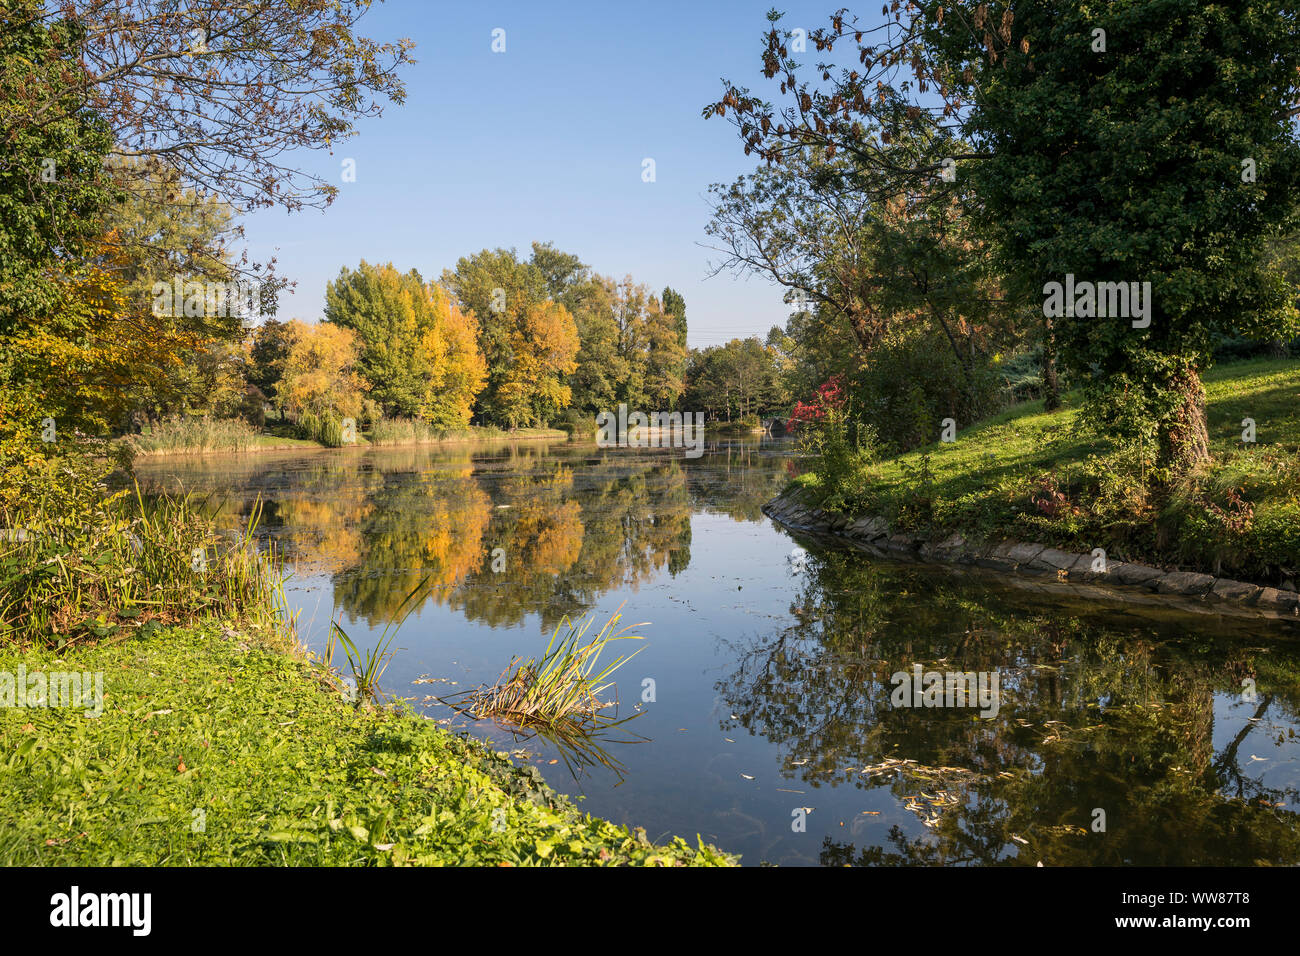 Wasser Park im Herbst, 21. Bezirk, Wien, Floridsdorf, Österreich  Stockfotografie - Alamy